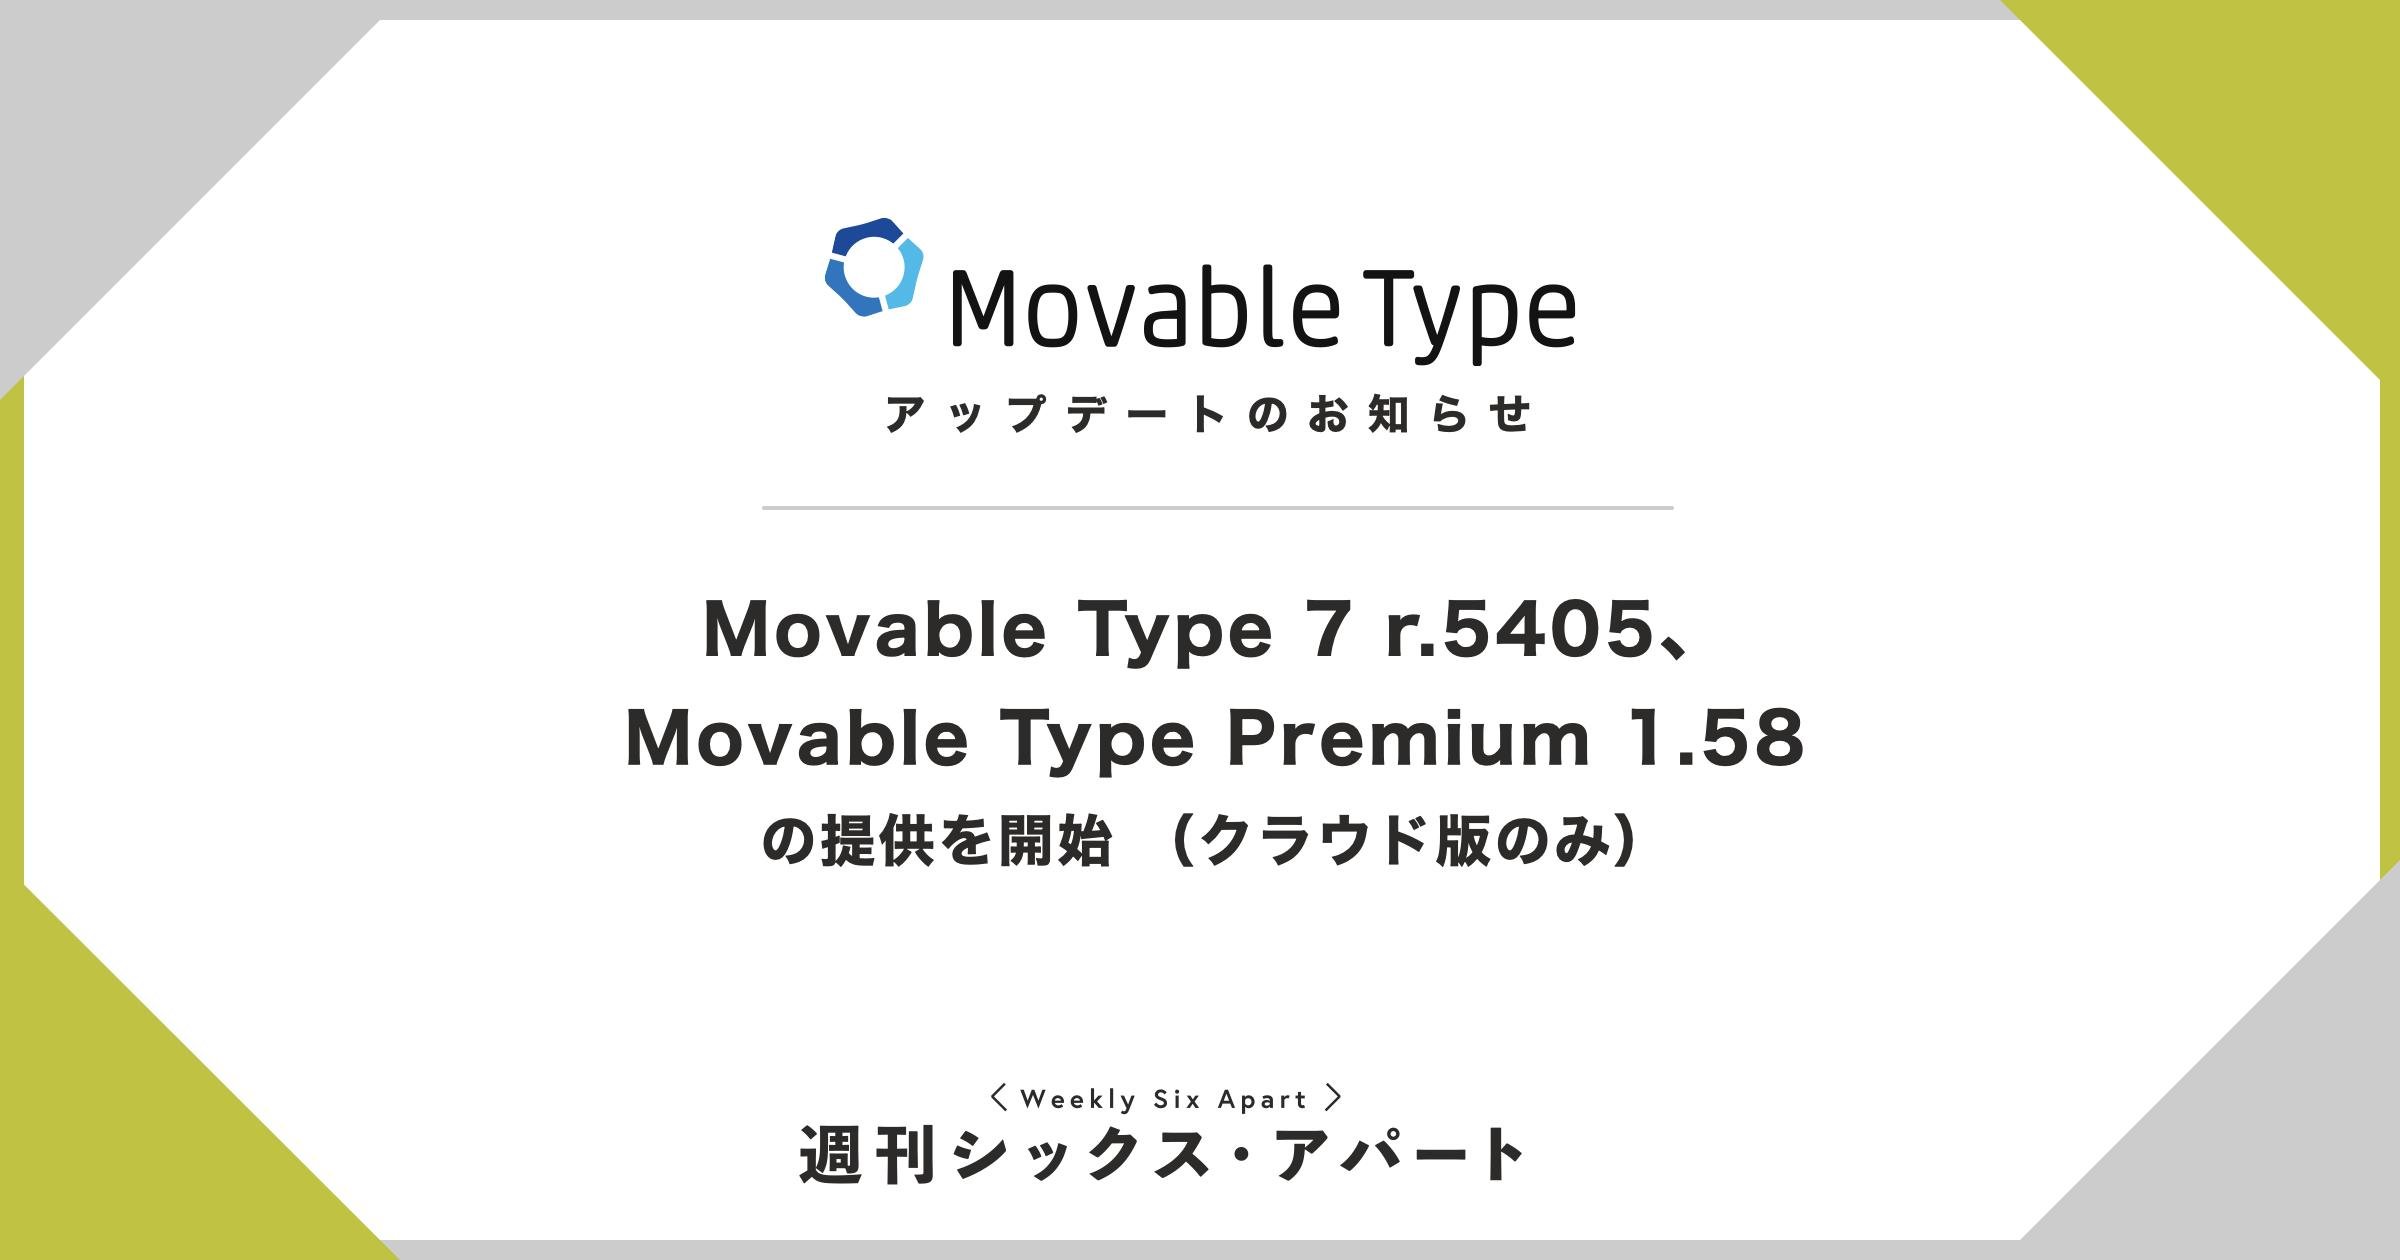 Movable Type 7 r.5405、Movable Type Premium 1.58 の提供を開始しました（クラウド版のみ） #週刊SA